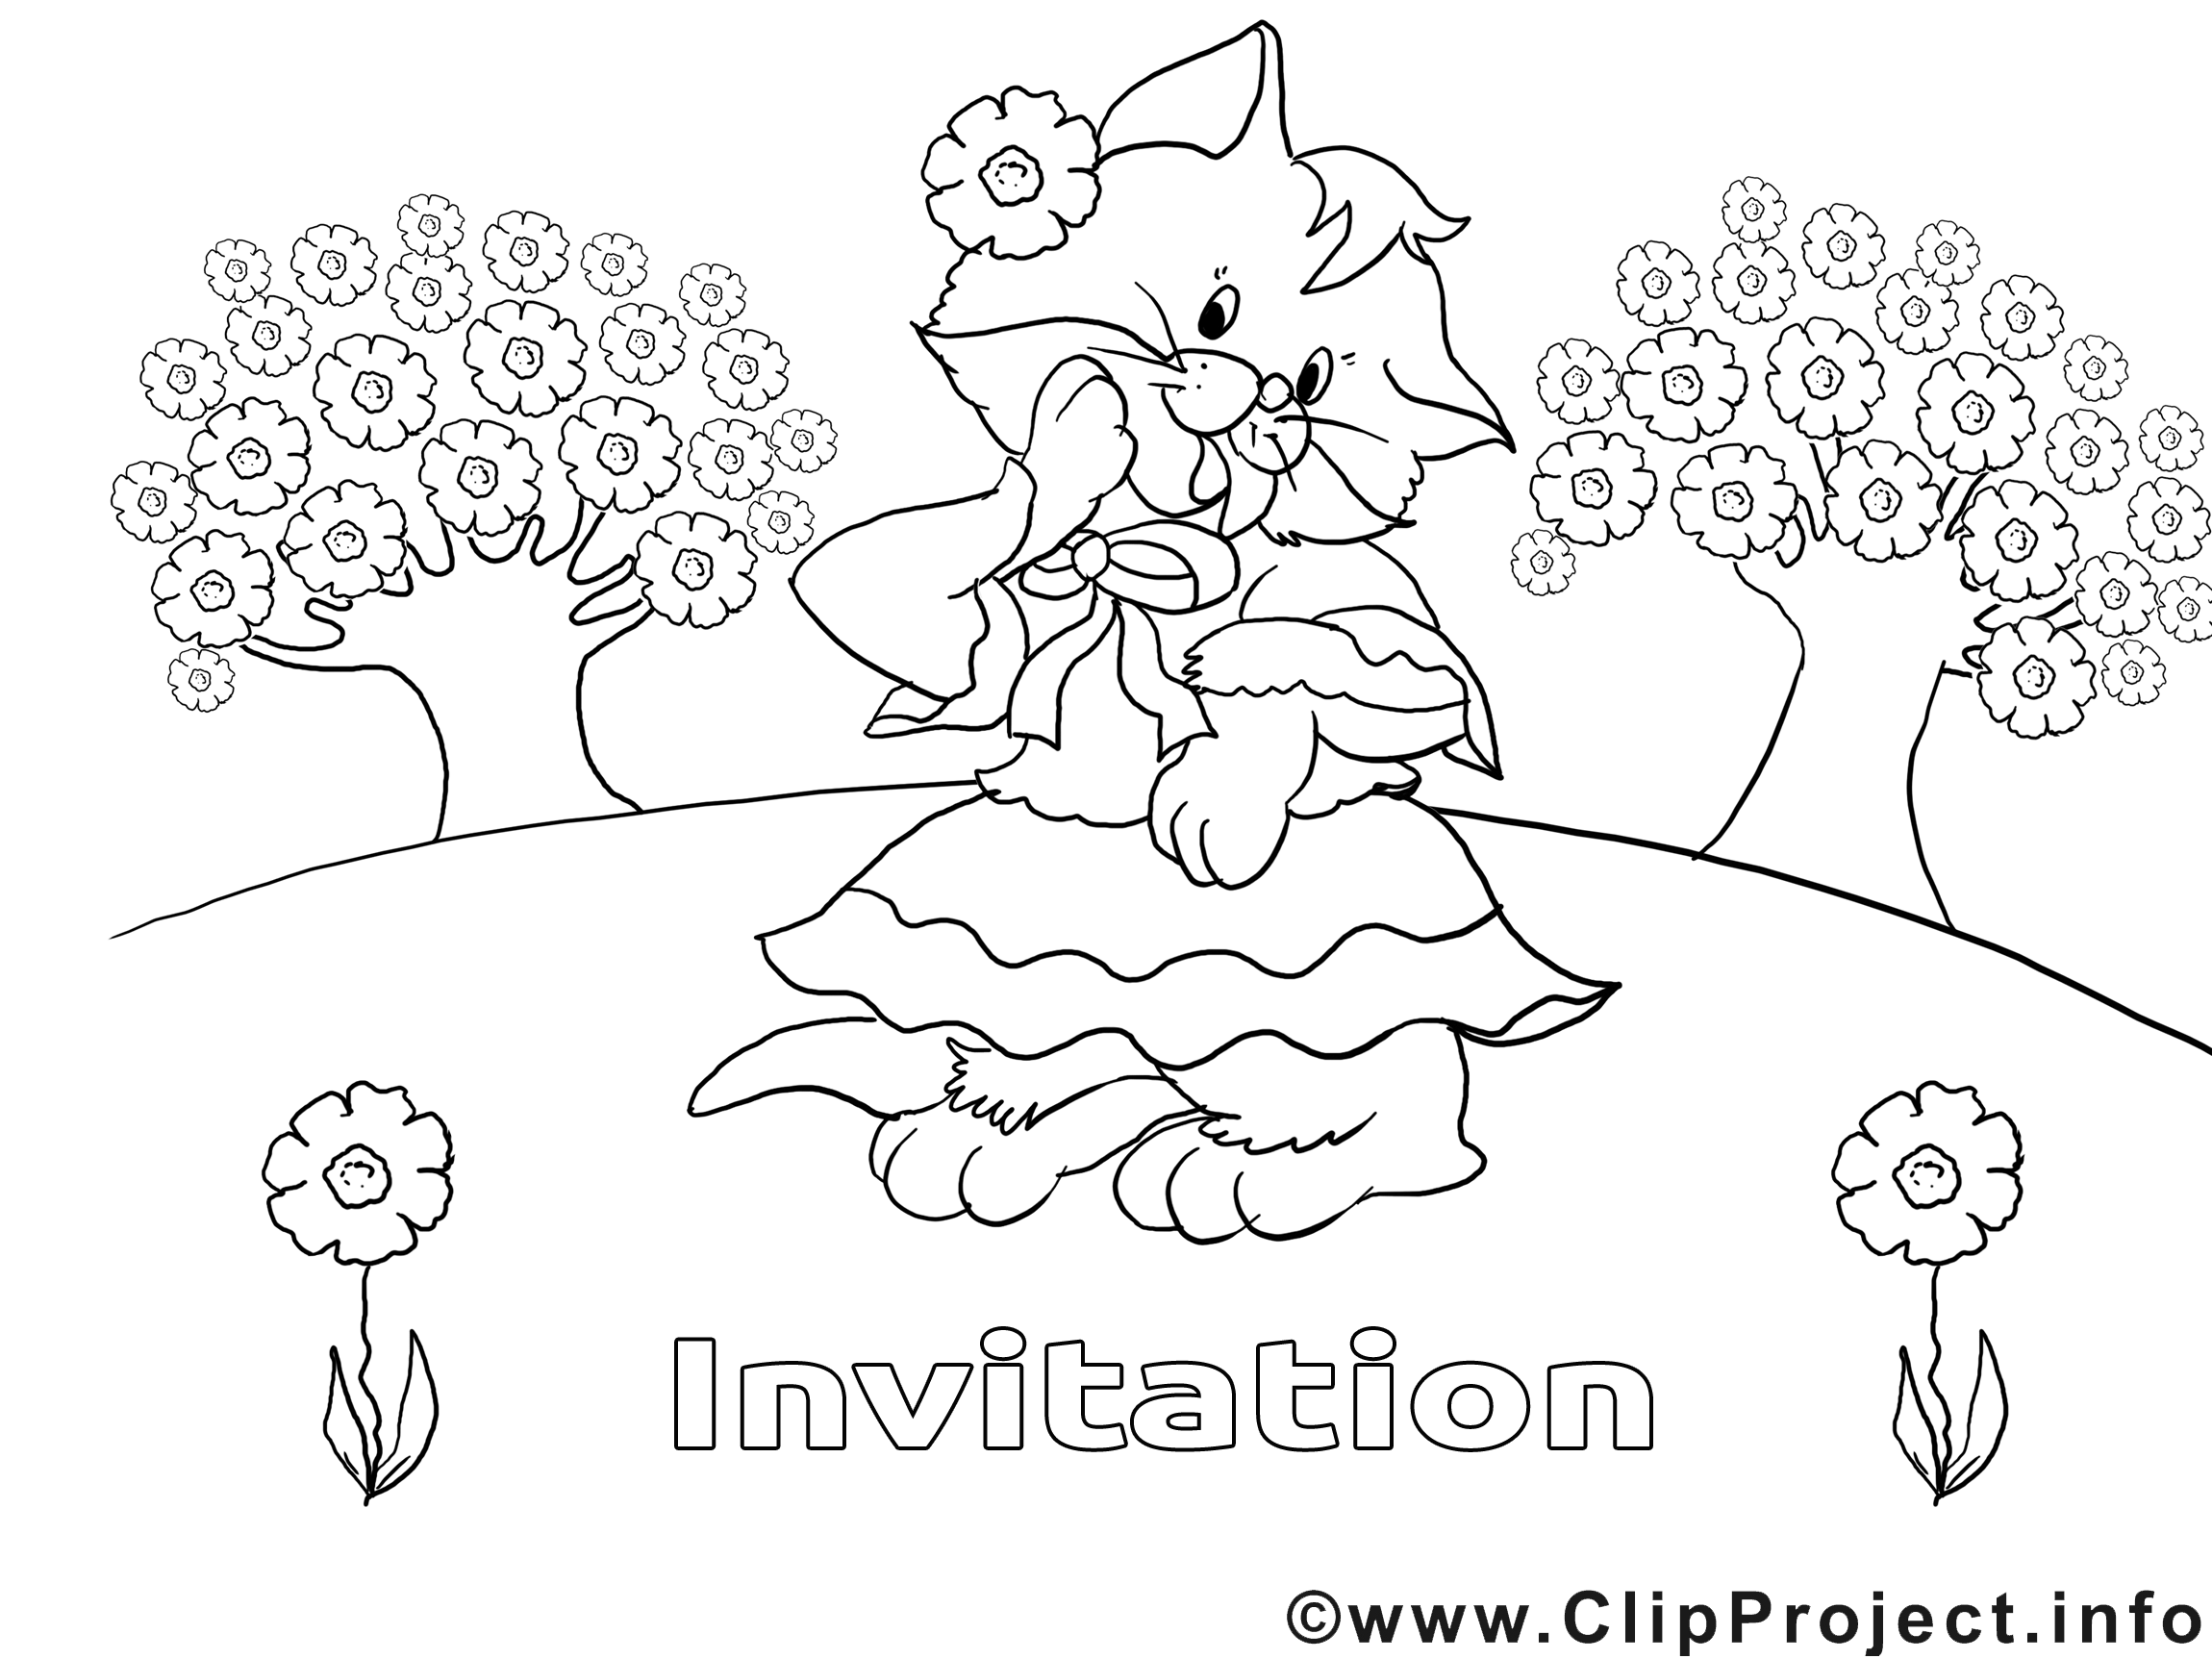 Coloriage chat invitations illustration à télécharger